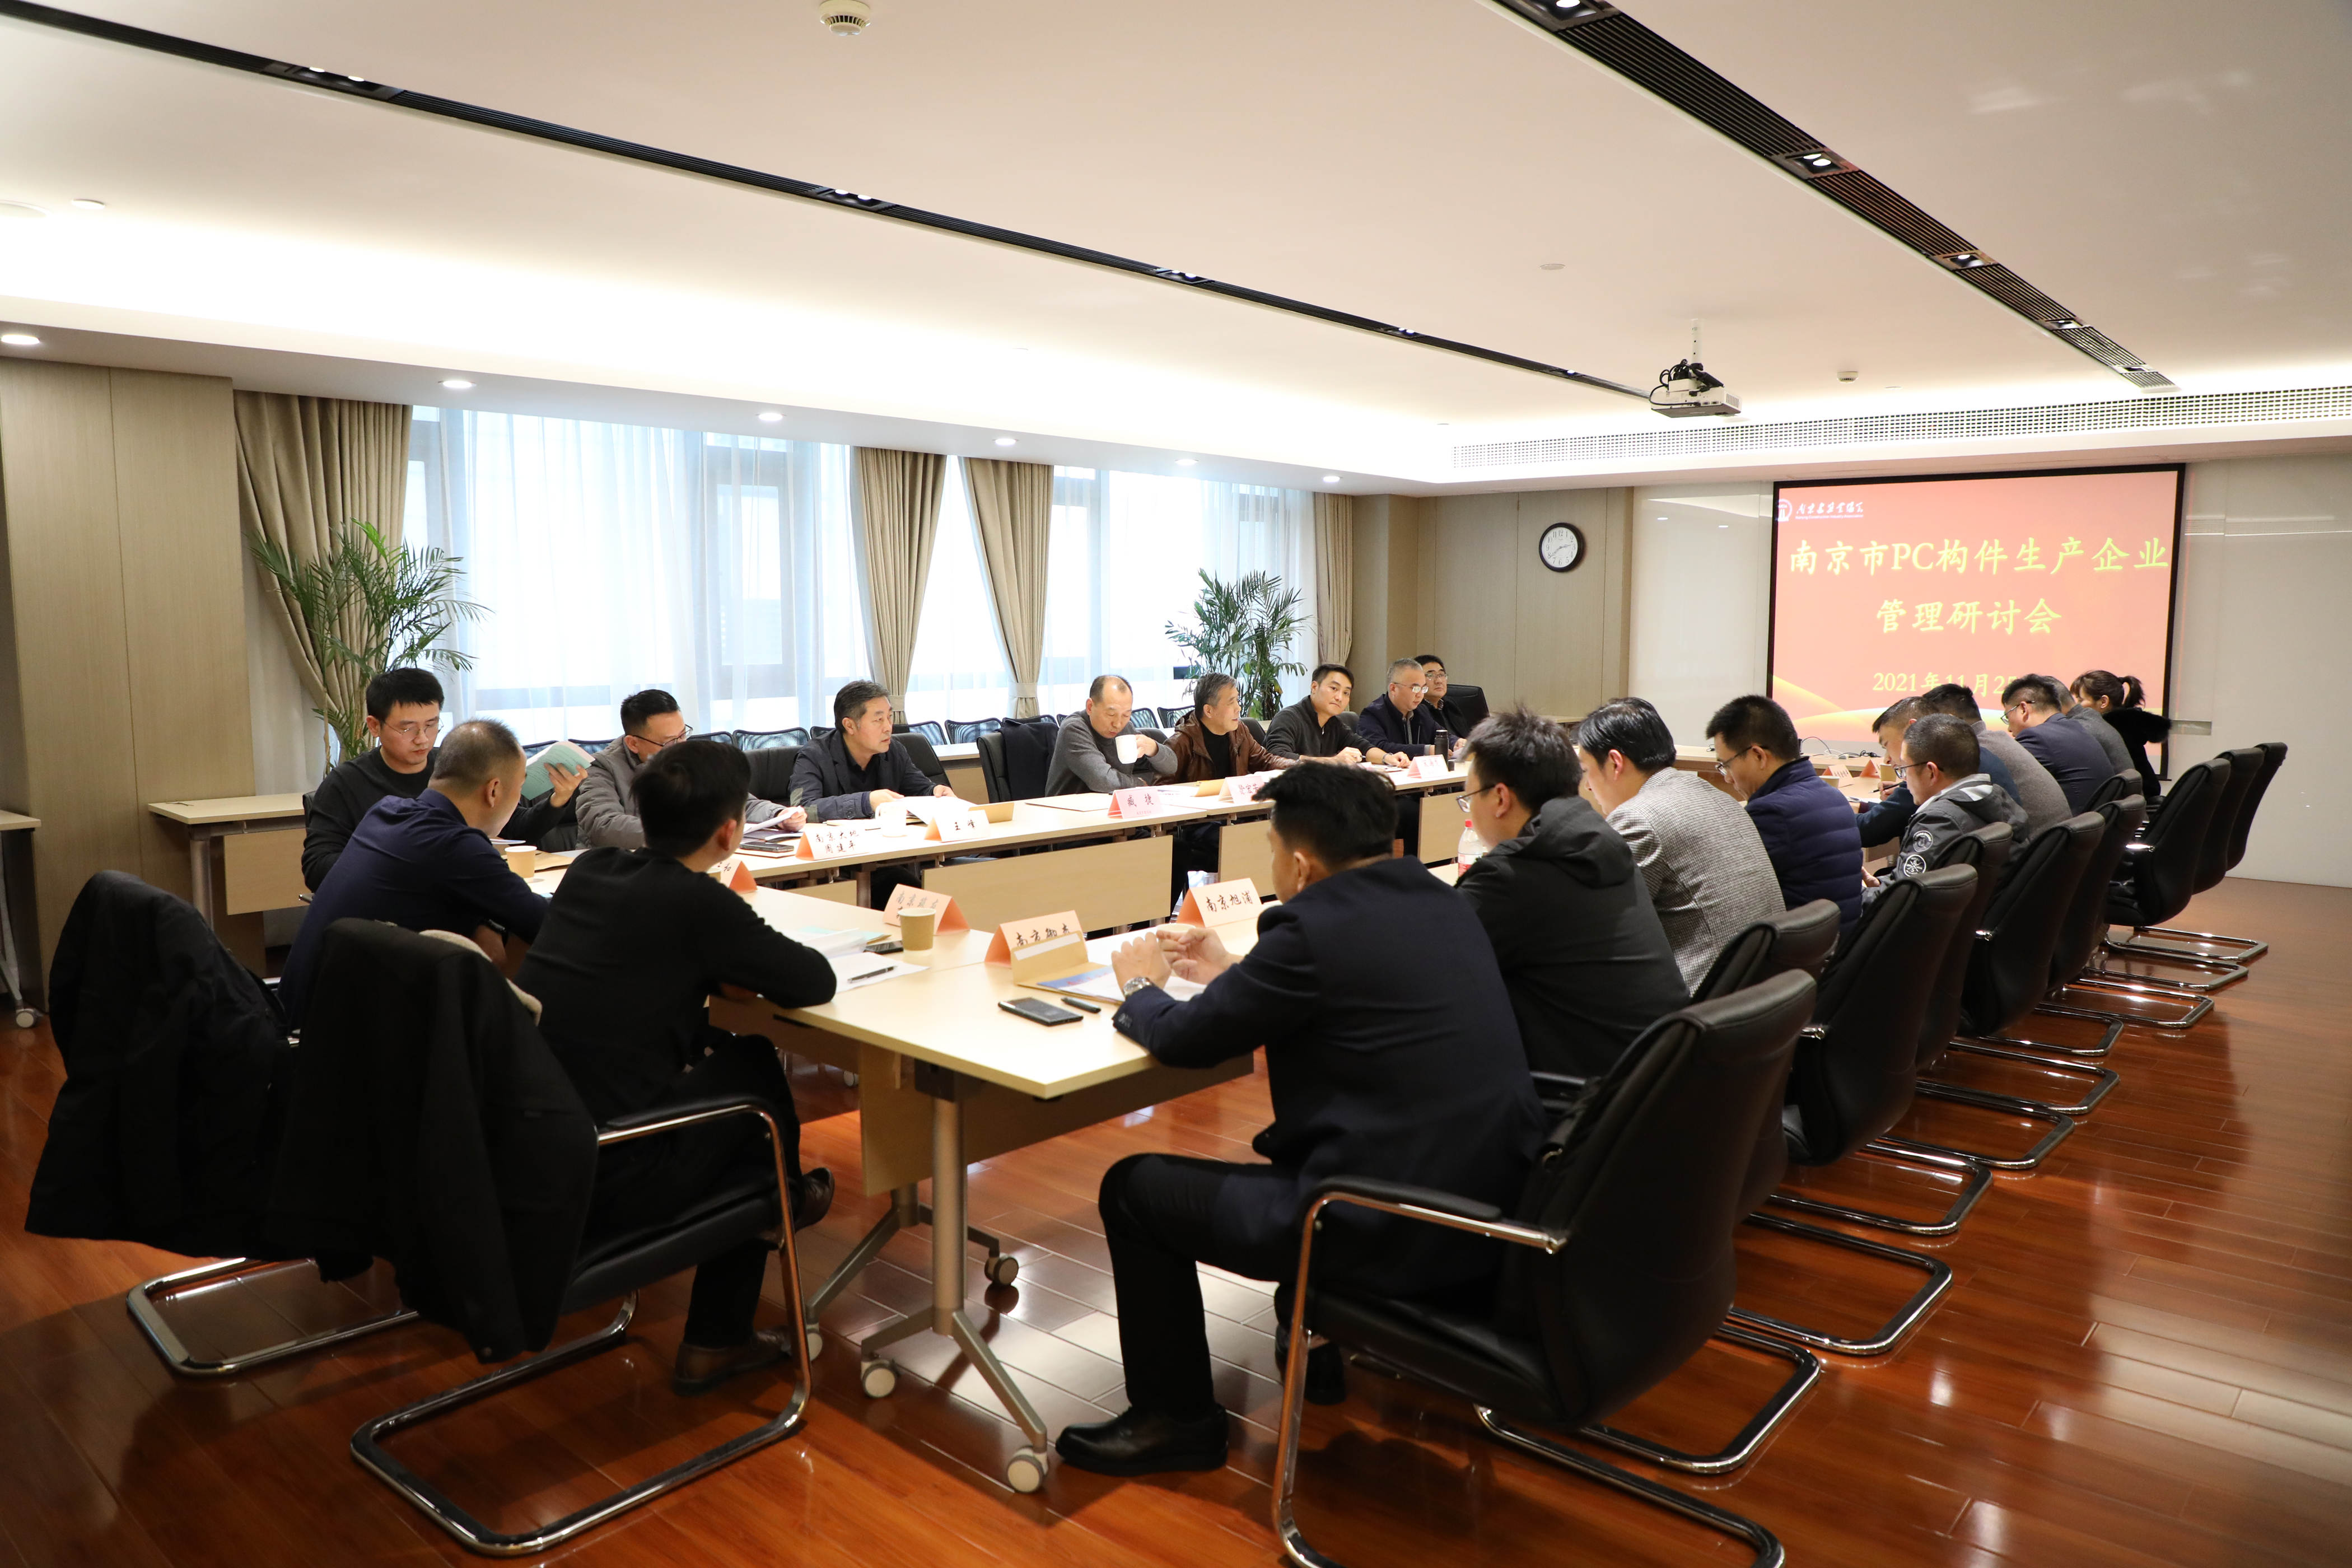 产业促进会组织召开南京市PC构件企业管理研讨会